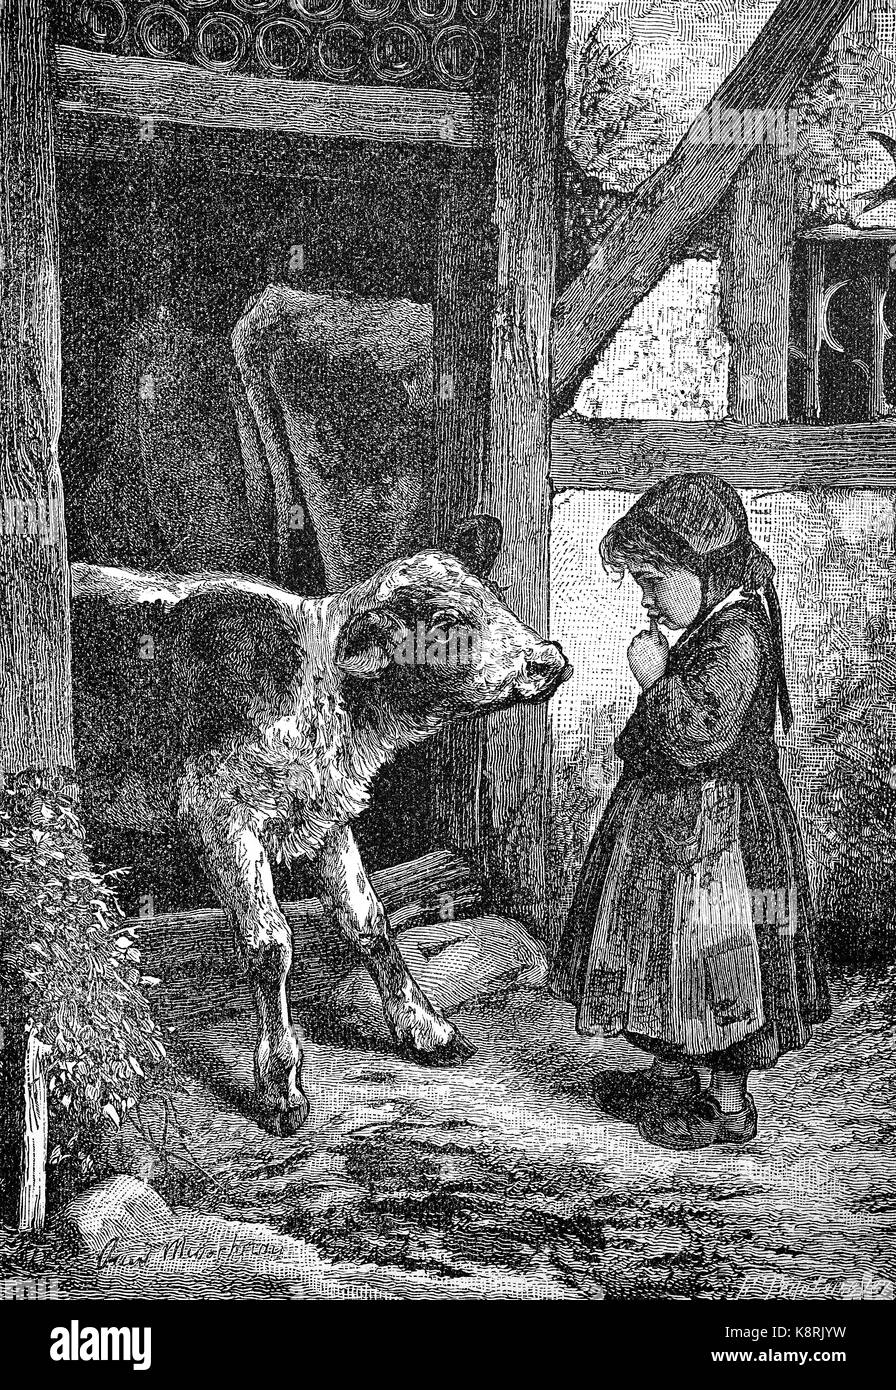 Petite fille est debout sur la ferme en face d'un veau, Kleines Mädchen steht auf dem Bauernhof vor einem Kalb, amélioration numérique reproduction d'une gravure sur bois, publié dans le 19e siècle Banque D'Images